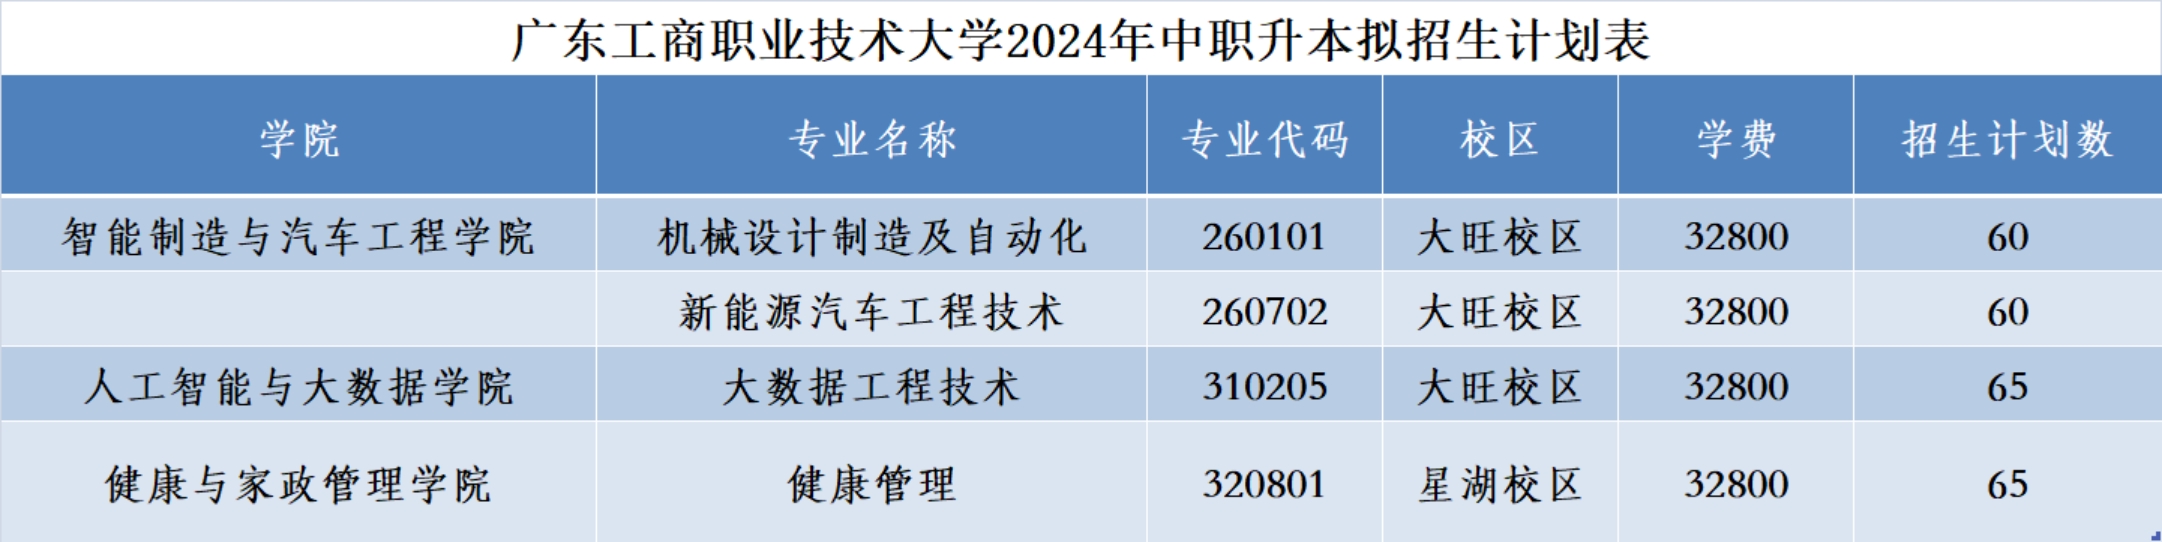 广东工商职业技术大学2024年中职升本拟招生计划表